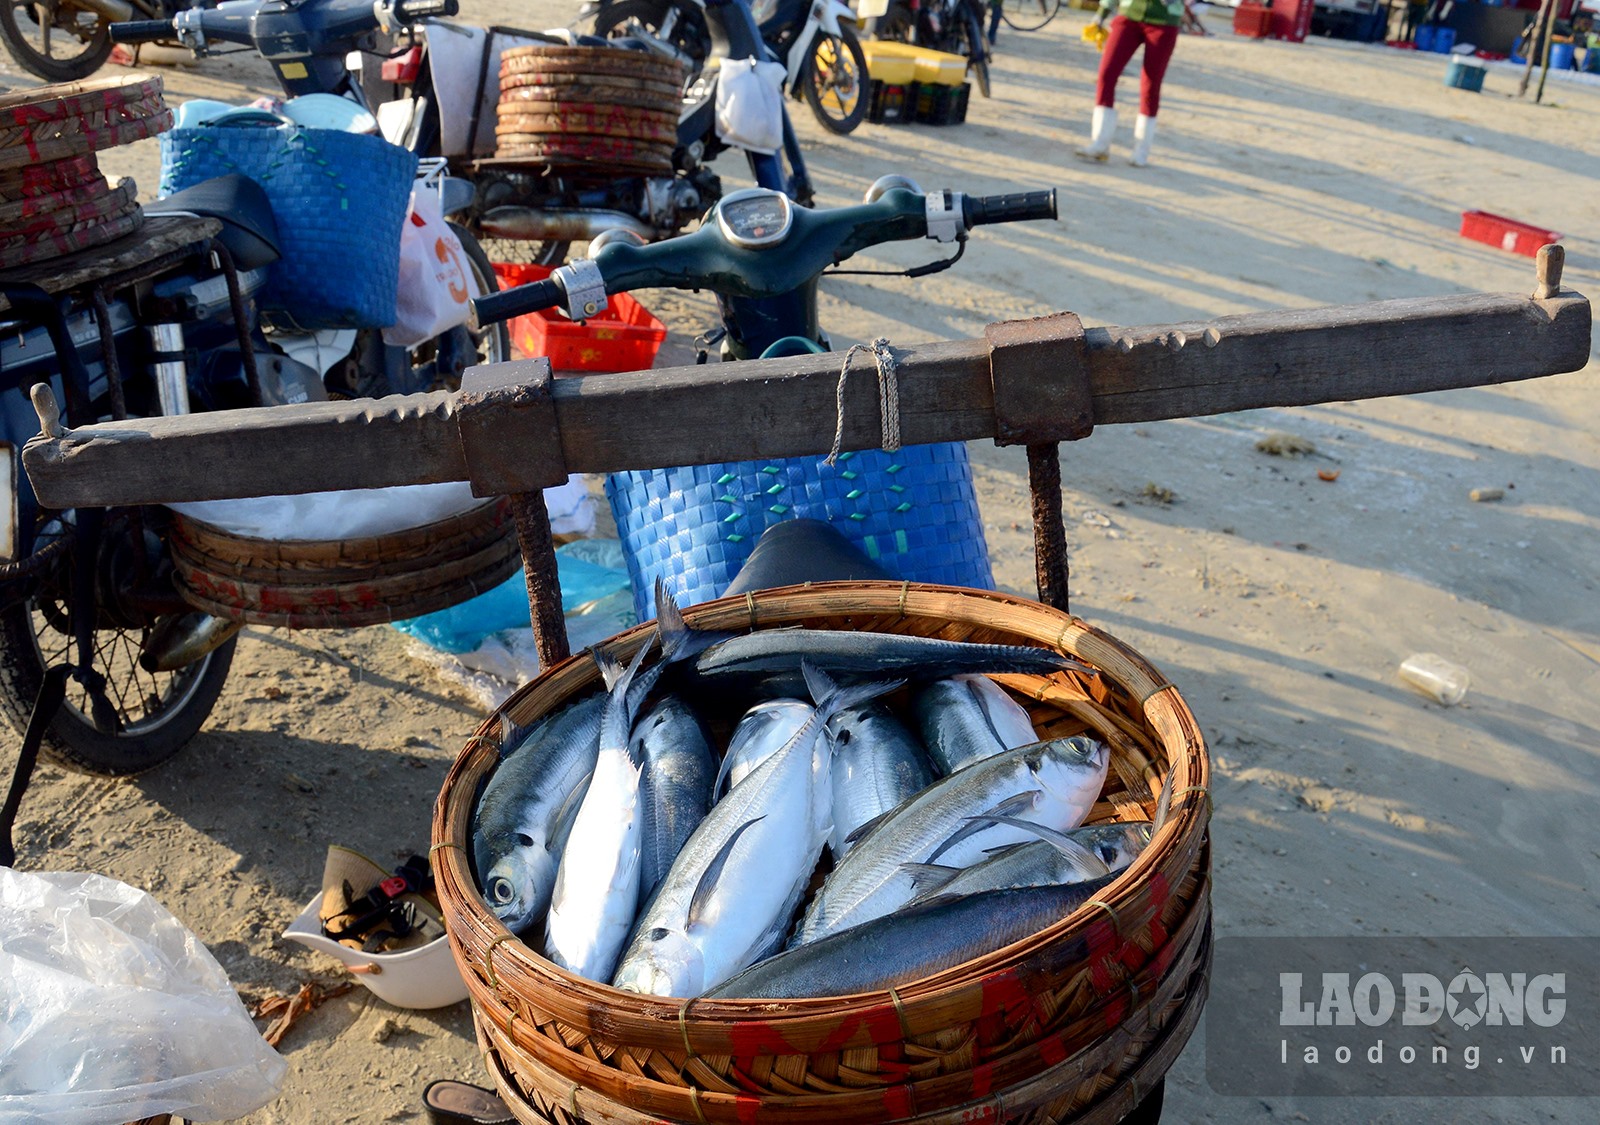 Chợ làng biển ở Quảng Ngãi, trên trời ánh bình minh, dưới tấp nập người mua bán, toàn thấy cá là cá - Ảnh 10.